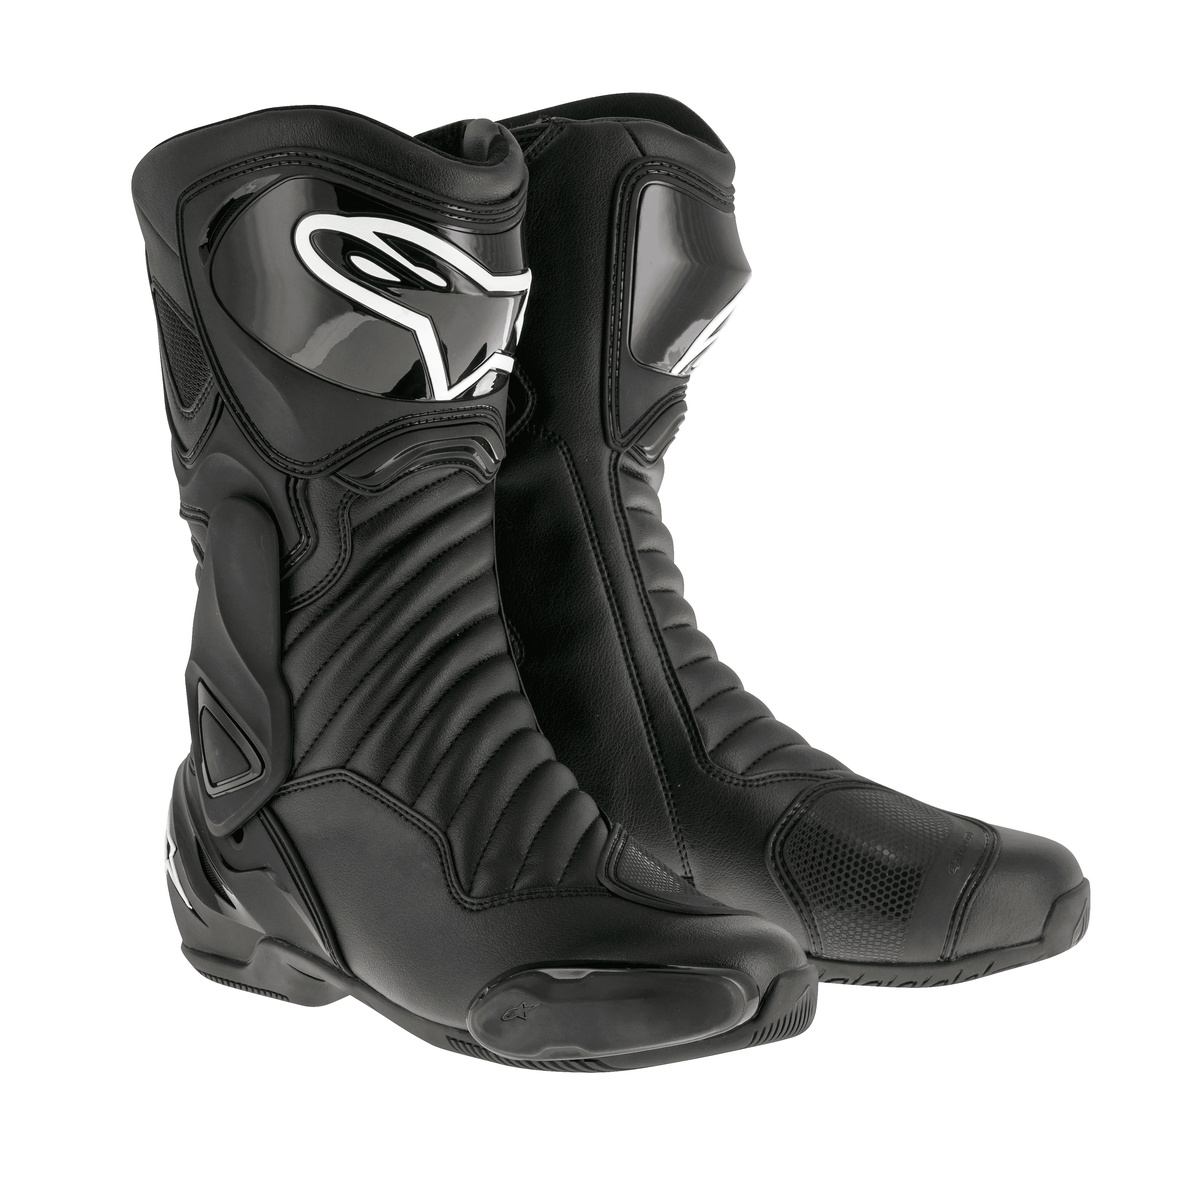 ALPINESTARS topánky, model SMX-6 V2, čierne